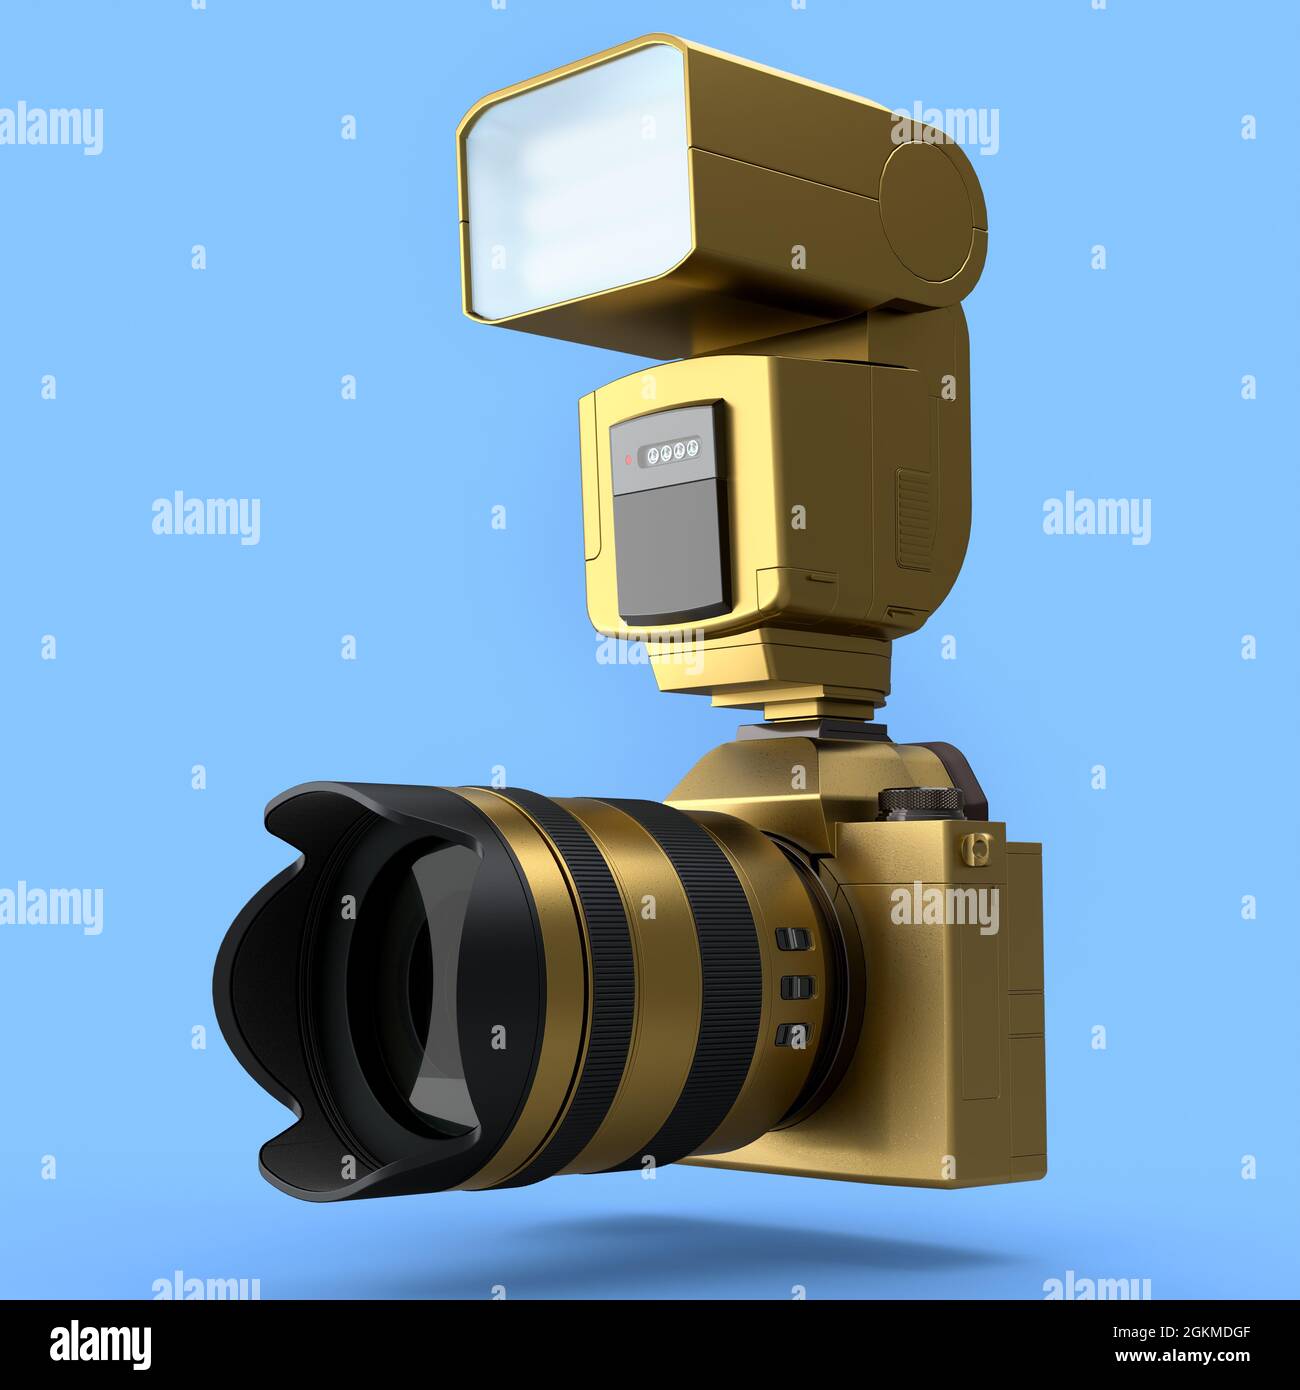 Concetto di inesistente oro DSLR fotocamera con obiettivo e flash esterno speedlight isolato su sfondo blu. Rendering 3D della fotografia professionale Foto Stock